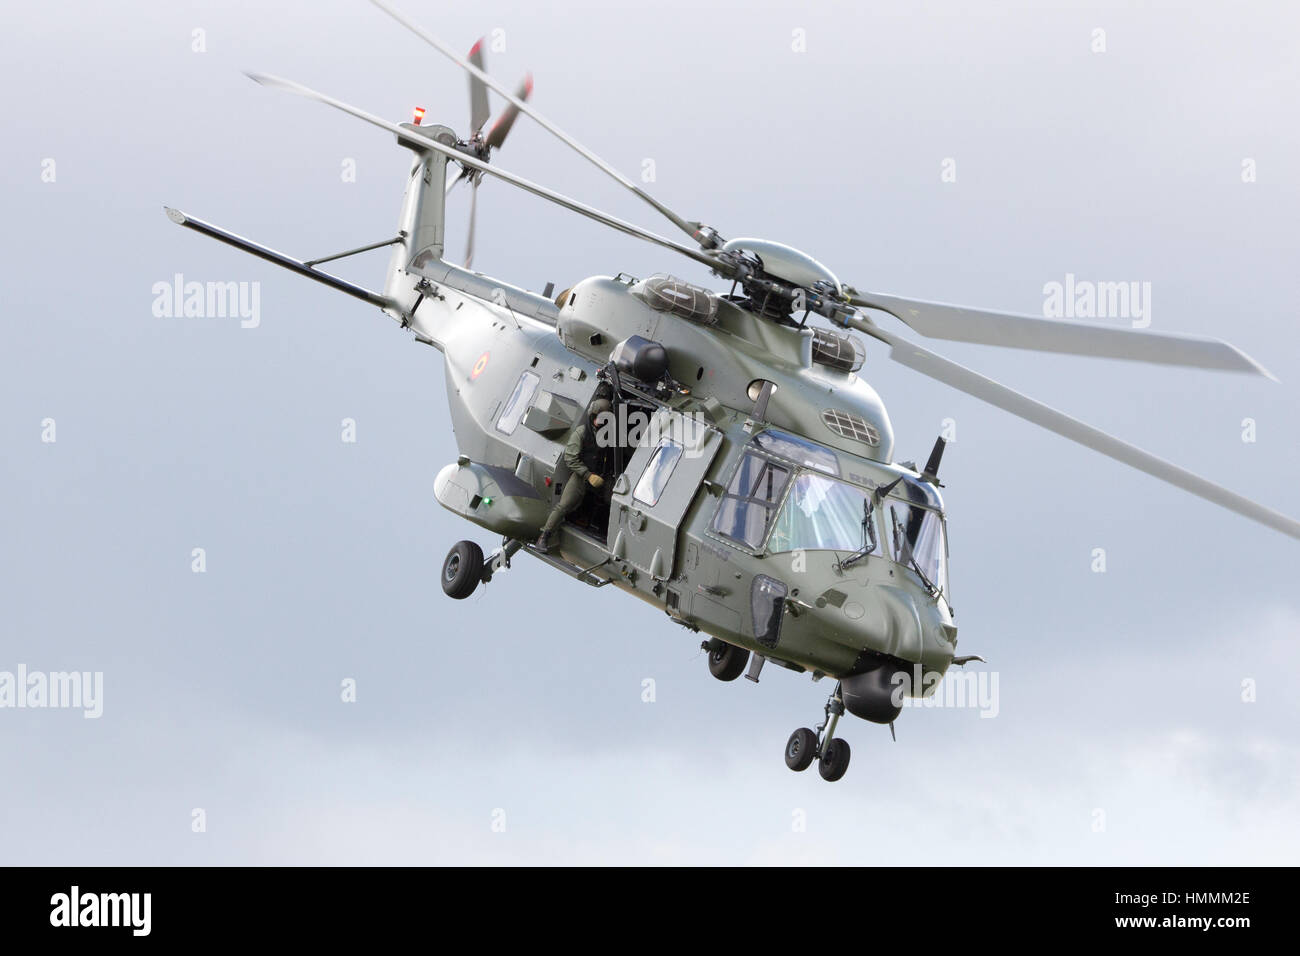 BEAUVECHAIN, Belgien - 20. Mai 2015: Der neue belgische Armee NH90 Hubschrauber abheben aus Beauvecahin Airbase. Die ersten Hubschrauber in Dienst gestellt ich Stockfoto